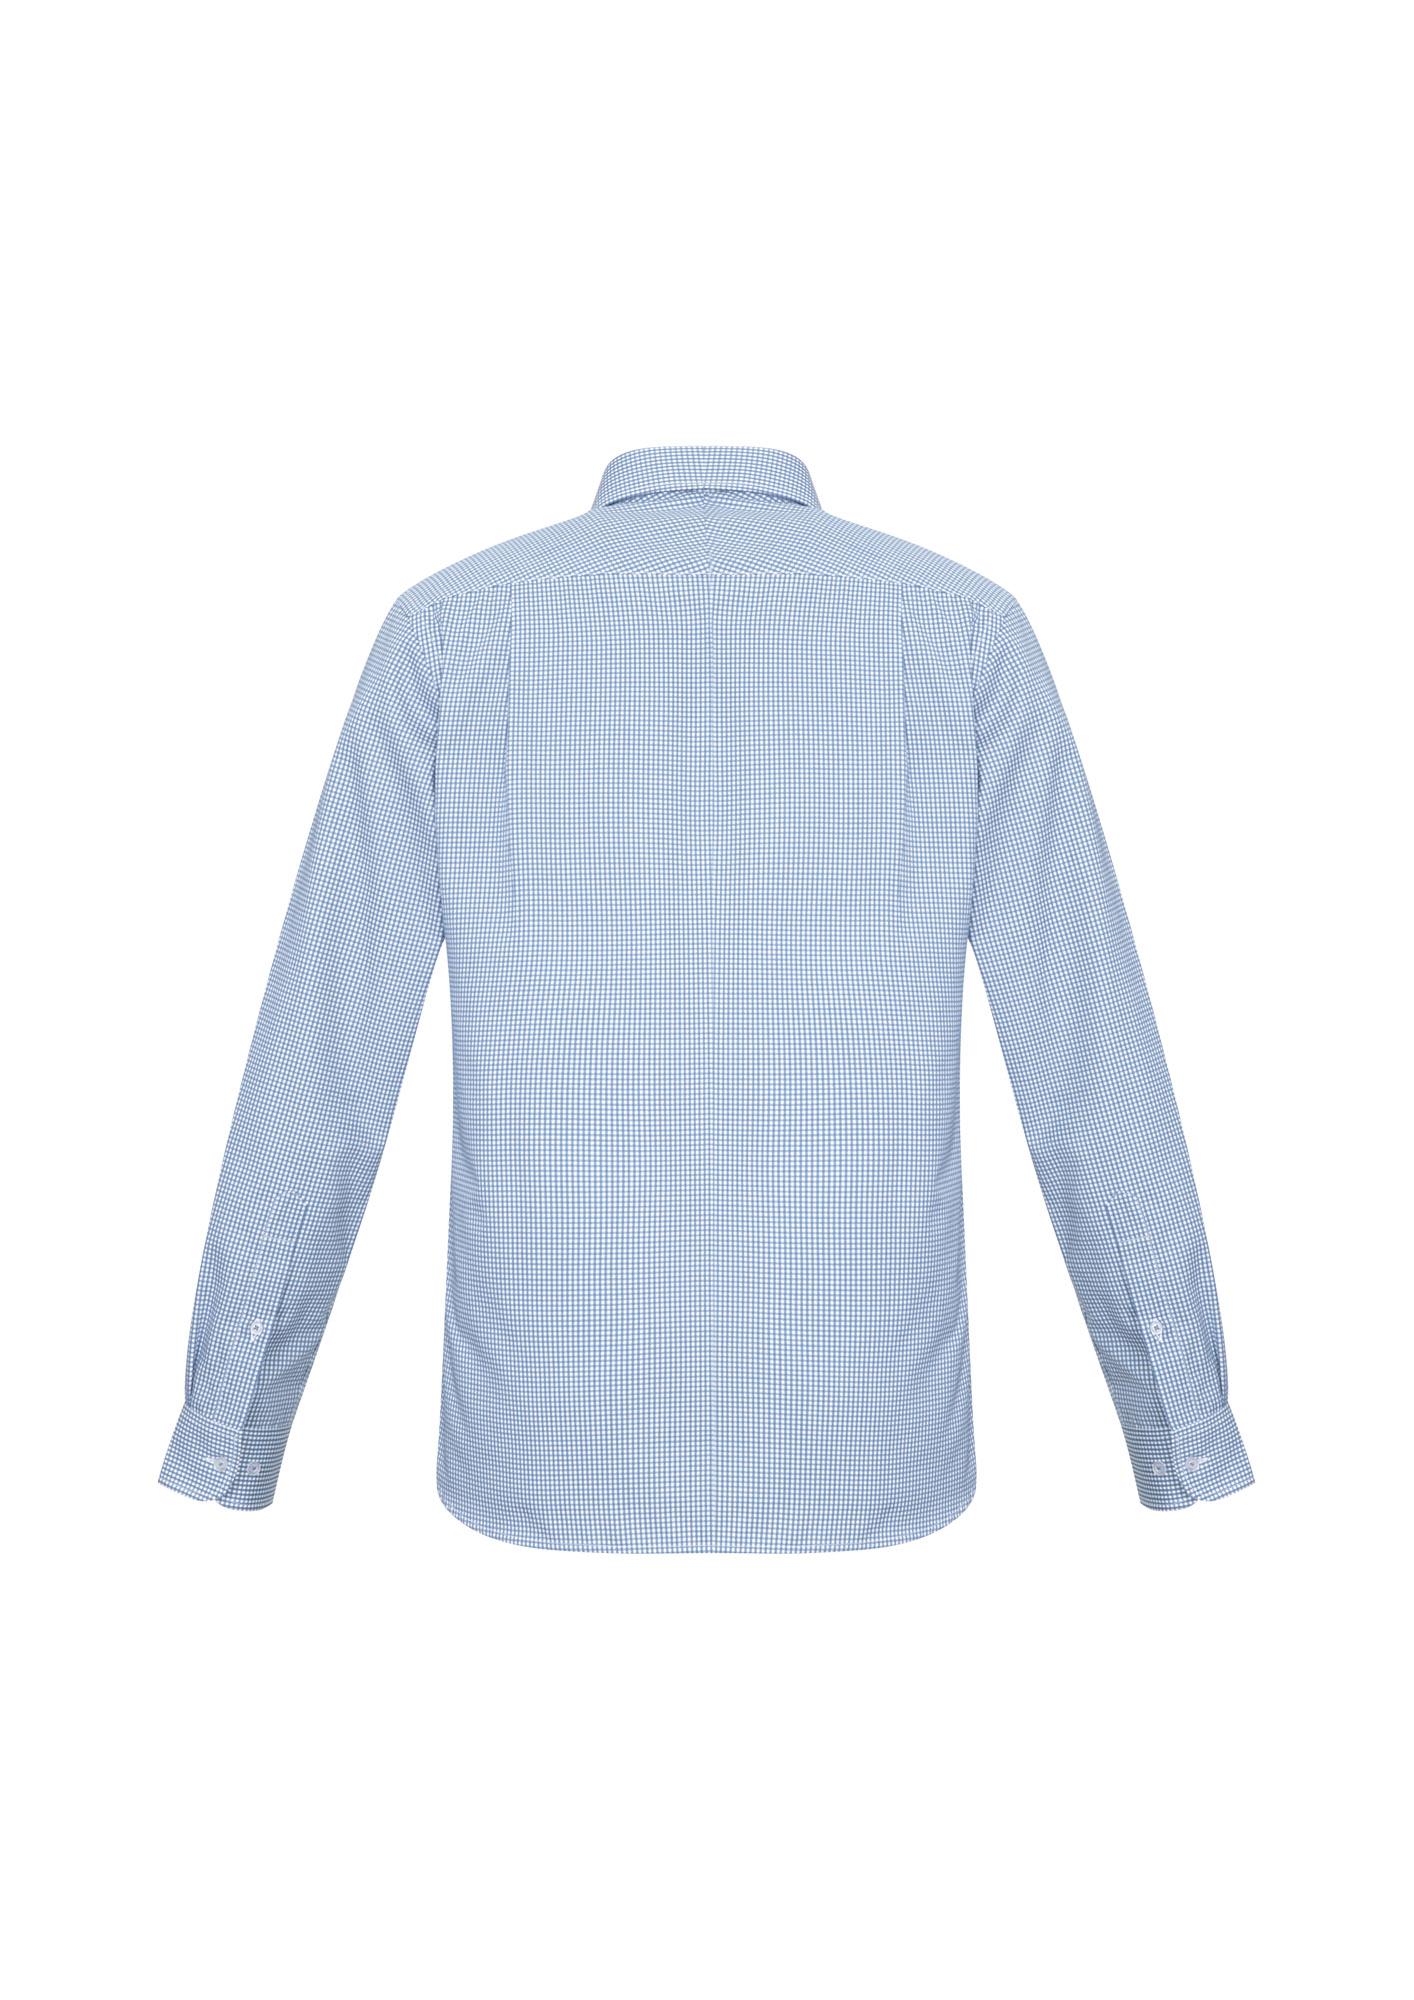 Mens Blue Ellison Shirt - The Uniform Edit